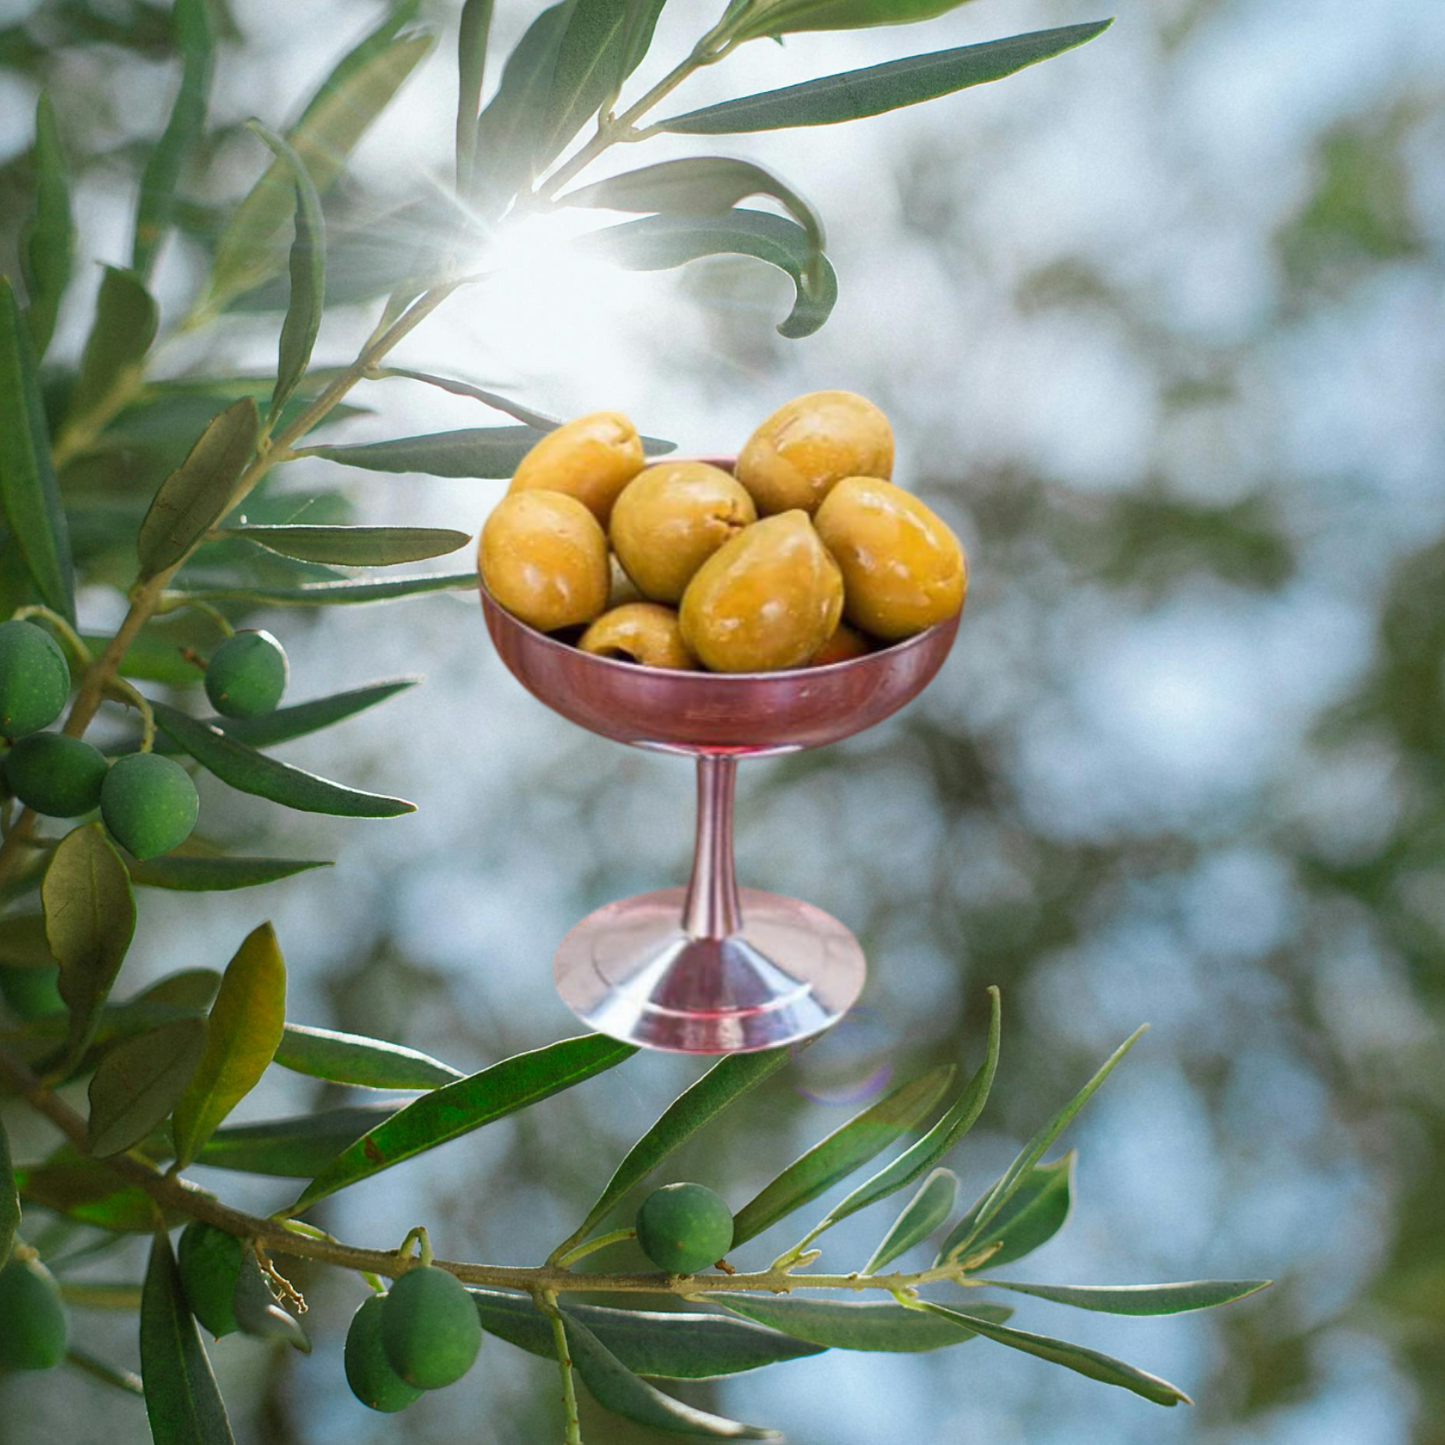 Nocellara oliver (sockersaltade)